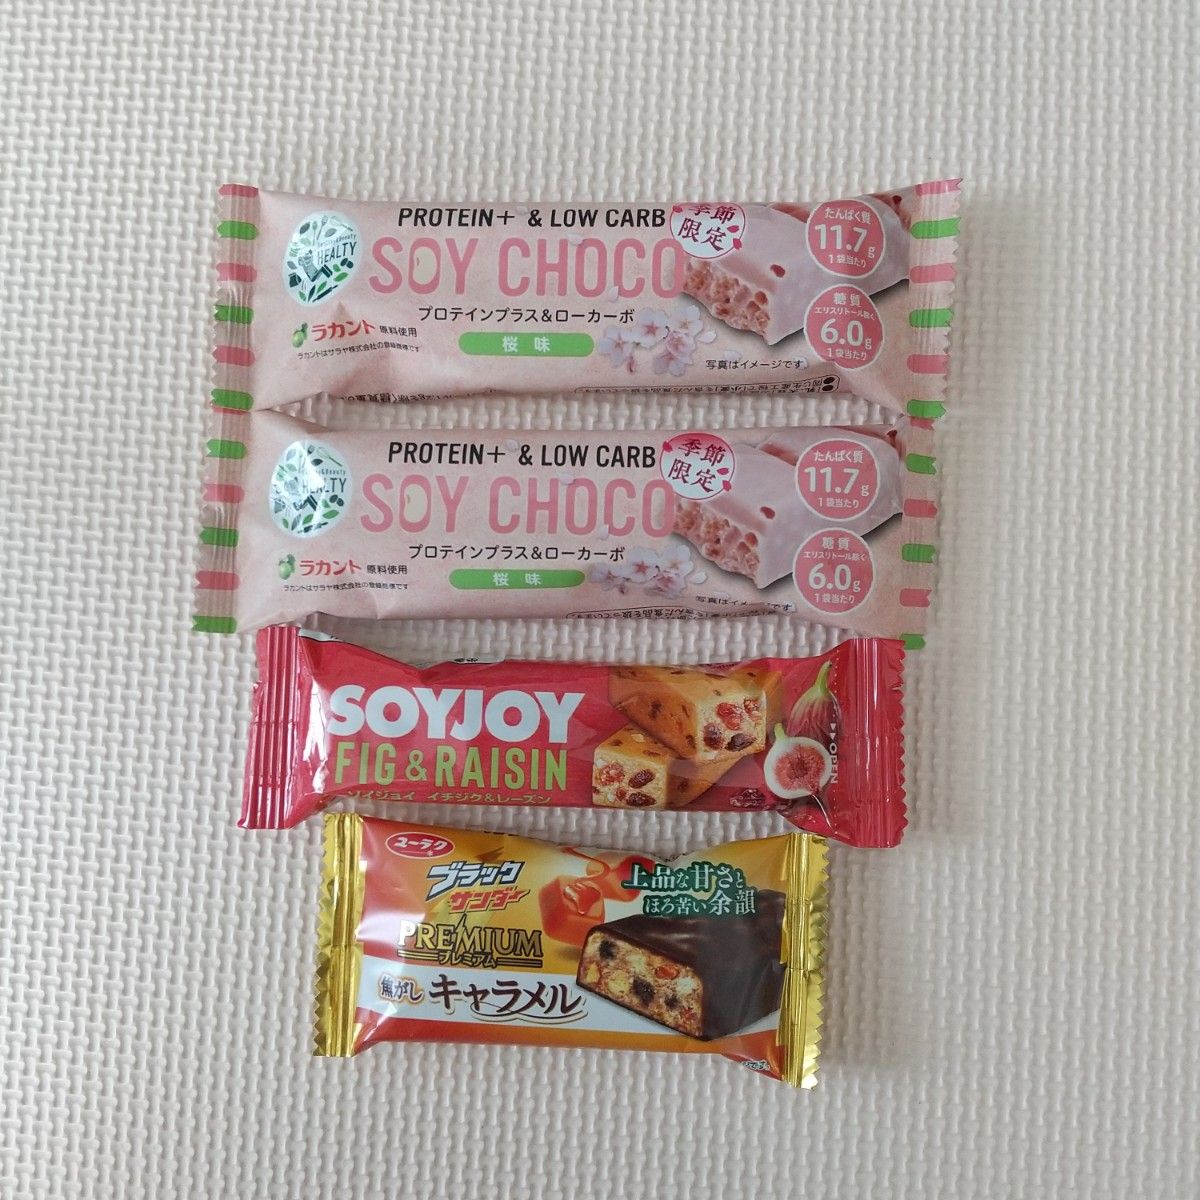 SOY CHOCO プロテインバー 桜味  2個  / ソイジョイ イチジク&レーズン  1個  / ブラックサンダー 1個